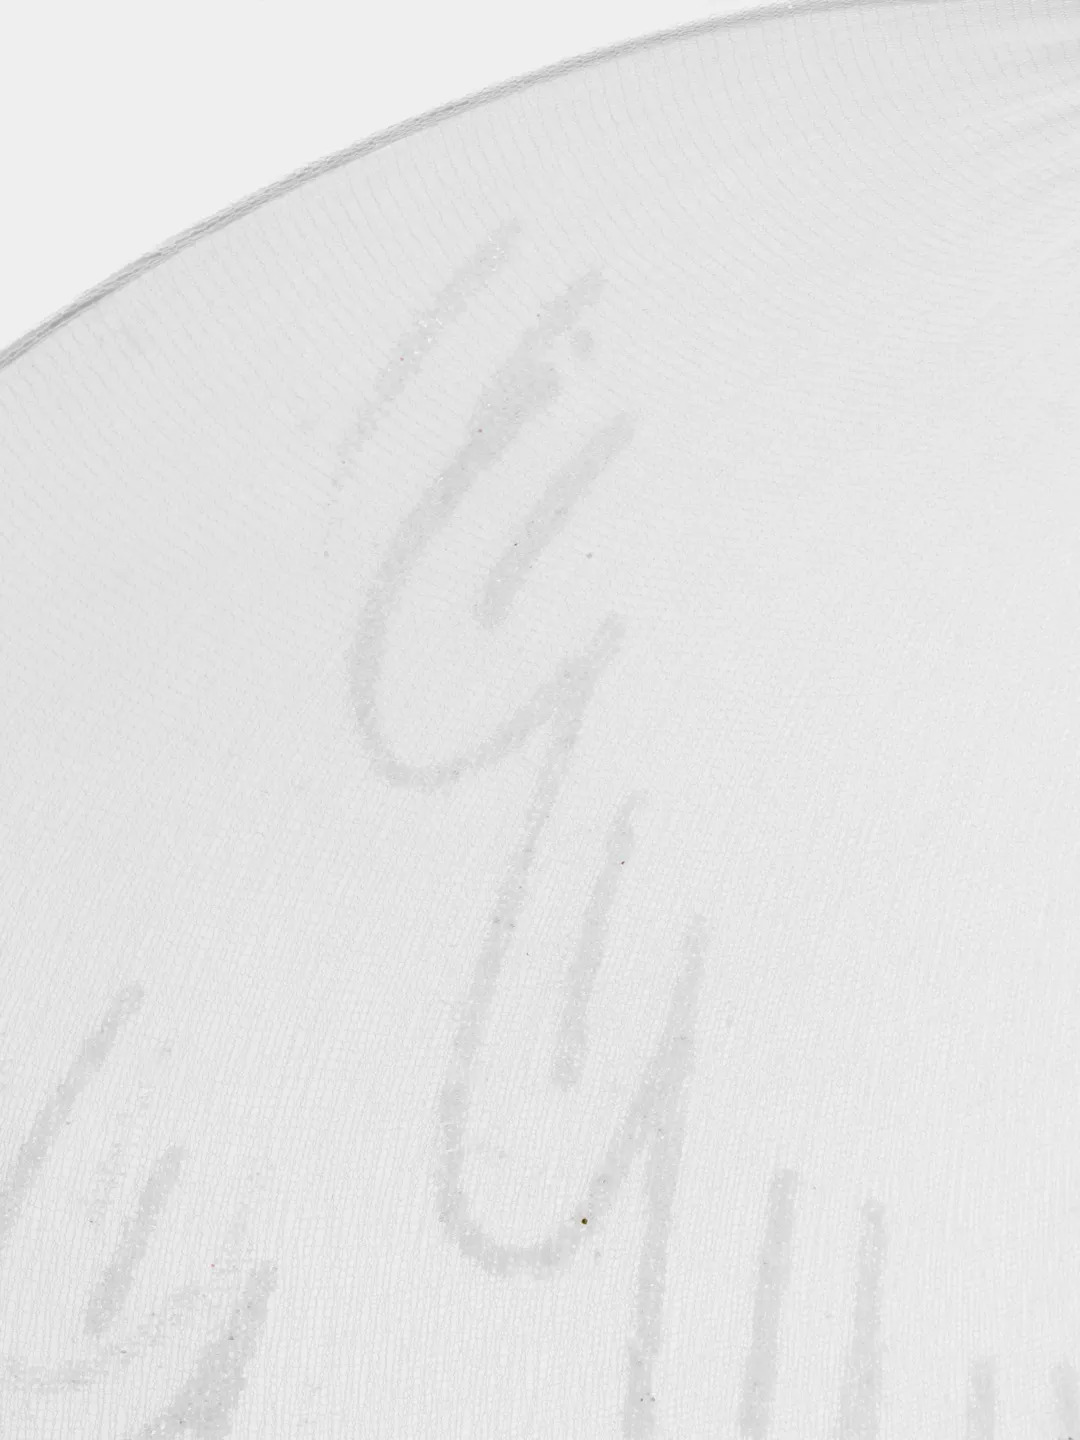 Beyaz Renk Ortası Beyaz Tüylü Tül Peri Kanadı 40x50 cm (CLZ)